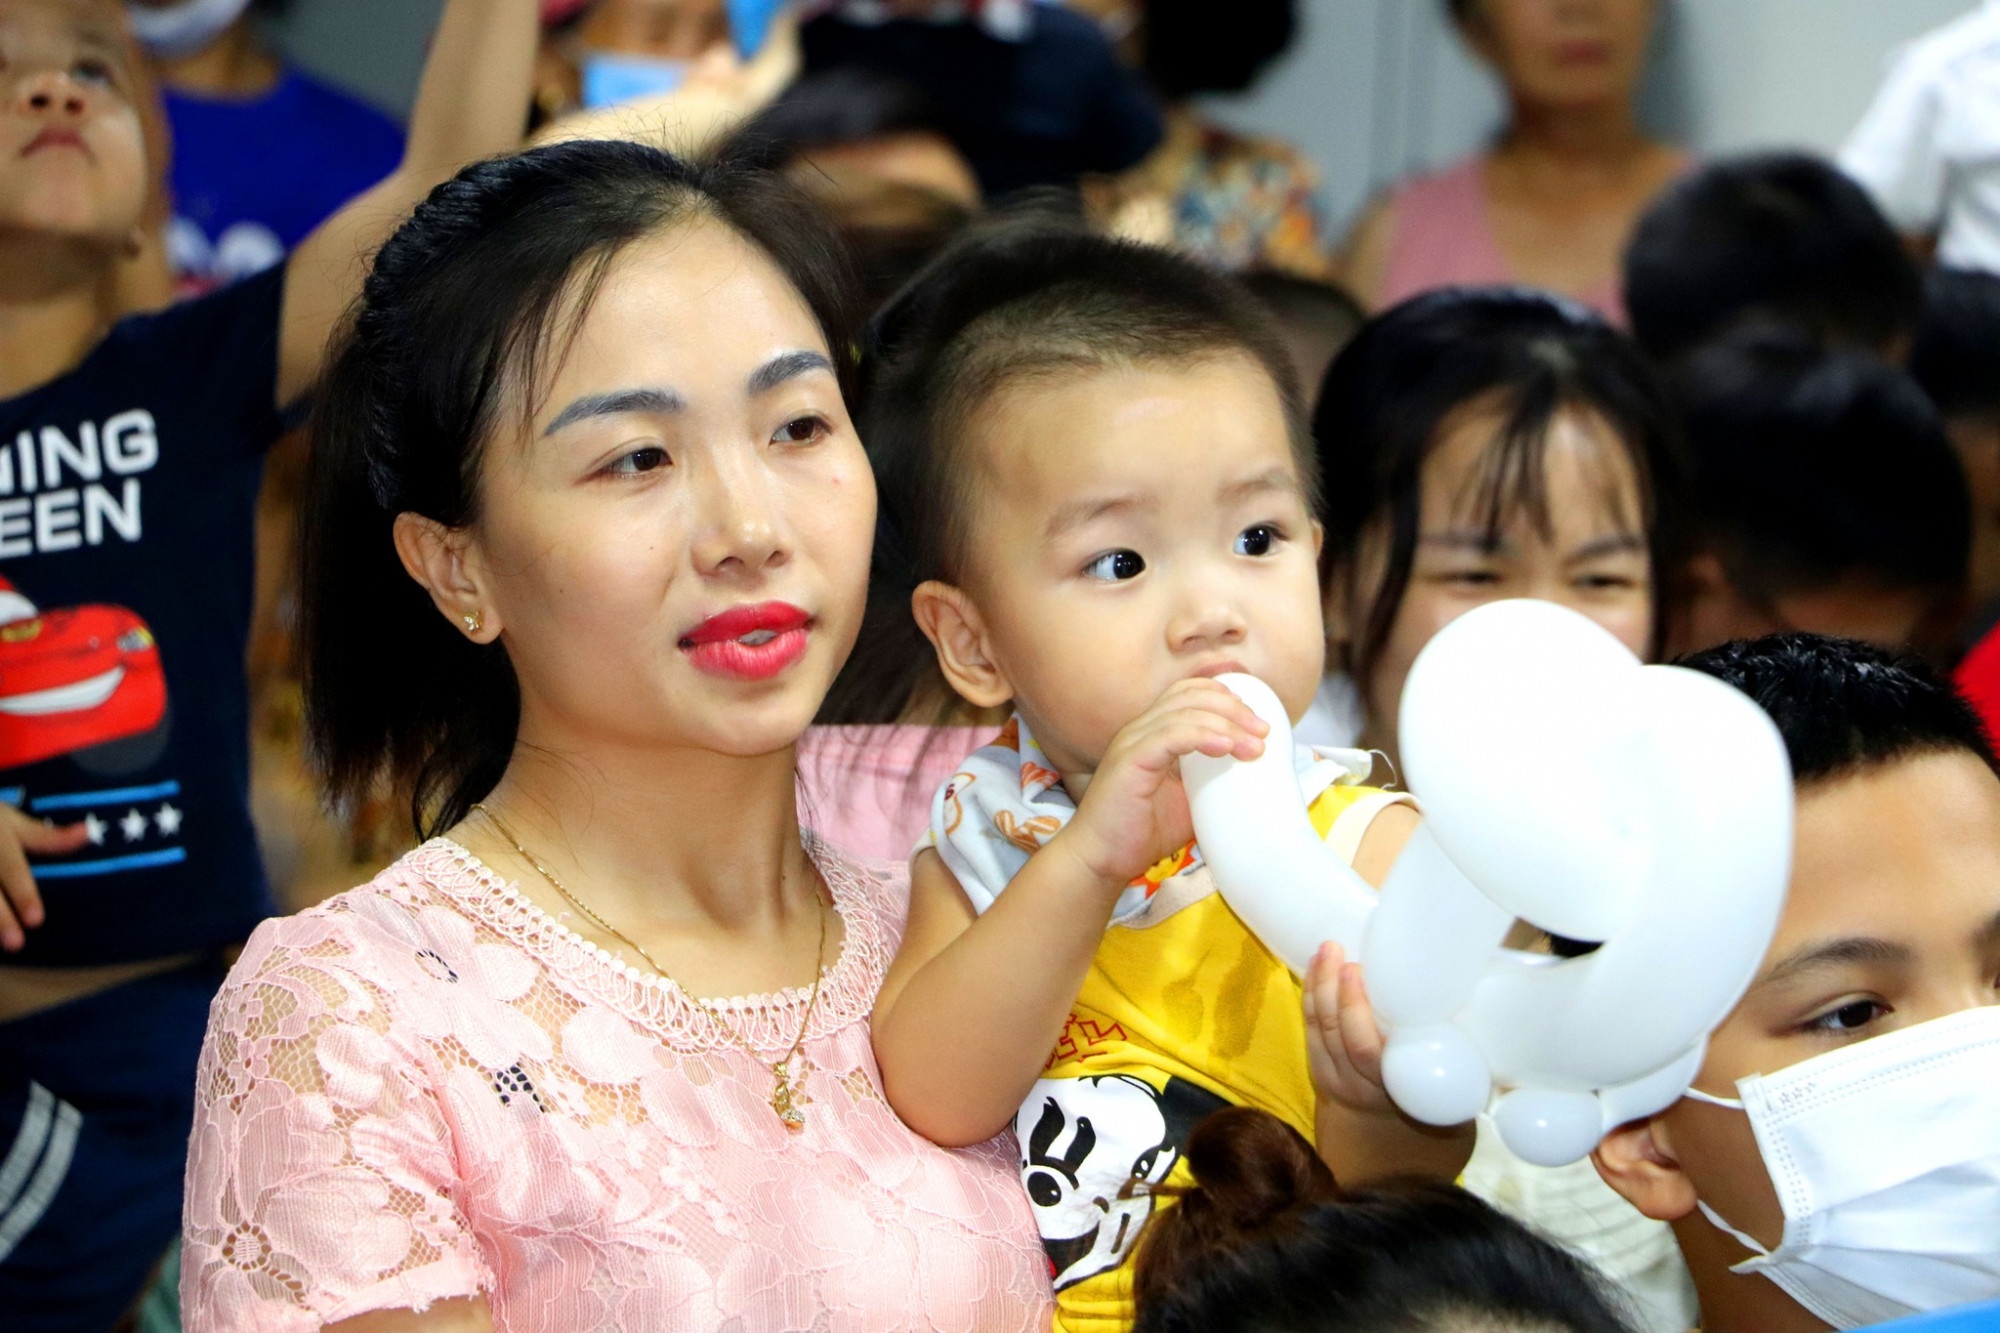 Mỗi ngày, Bệnh viện Sản Nhi Nghệ An tiếp nhận hơn 1.000 trẻ em đến thăm khám và điều trị. Đêm hội được tổ chức sớm với mong muốn xoa dịu những nỗi đau về thể chất, động viên tinh thần của cả bệnh nhi và người nhà.